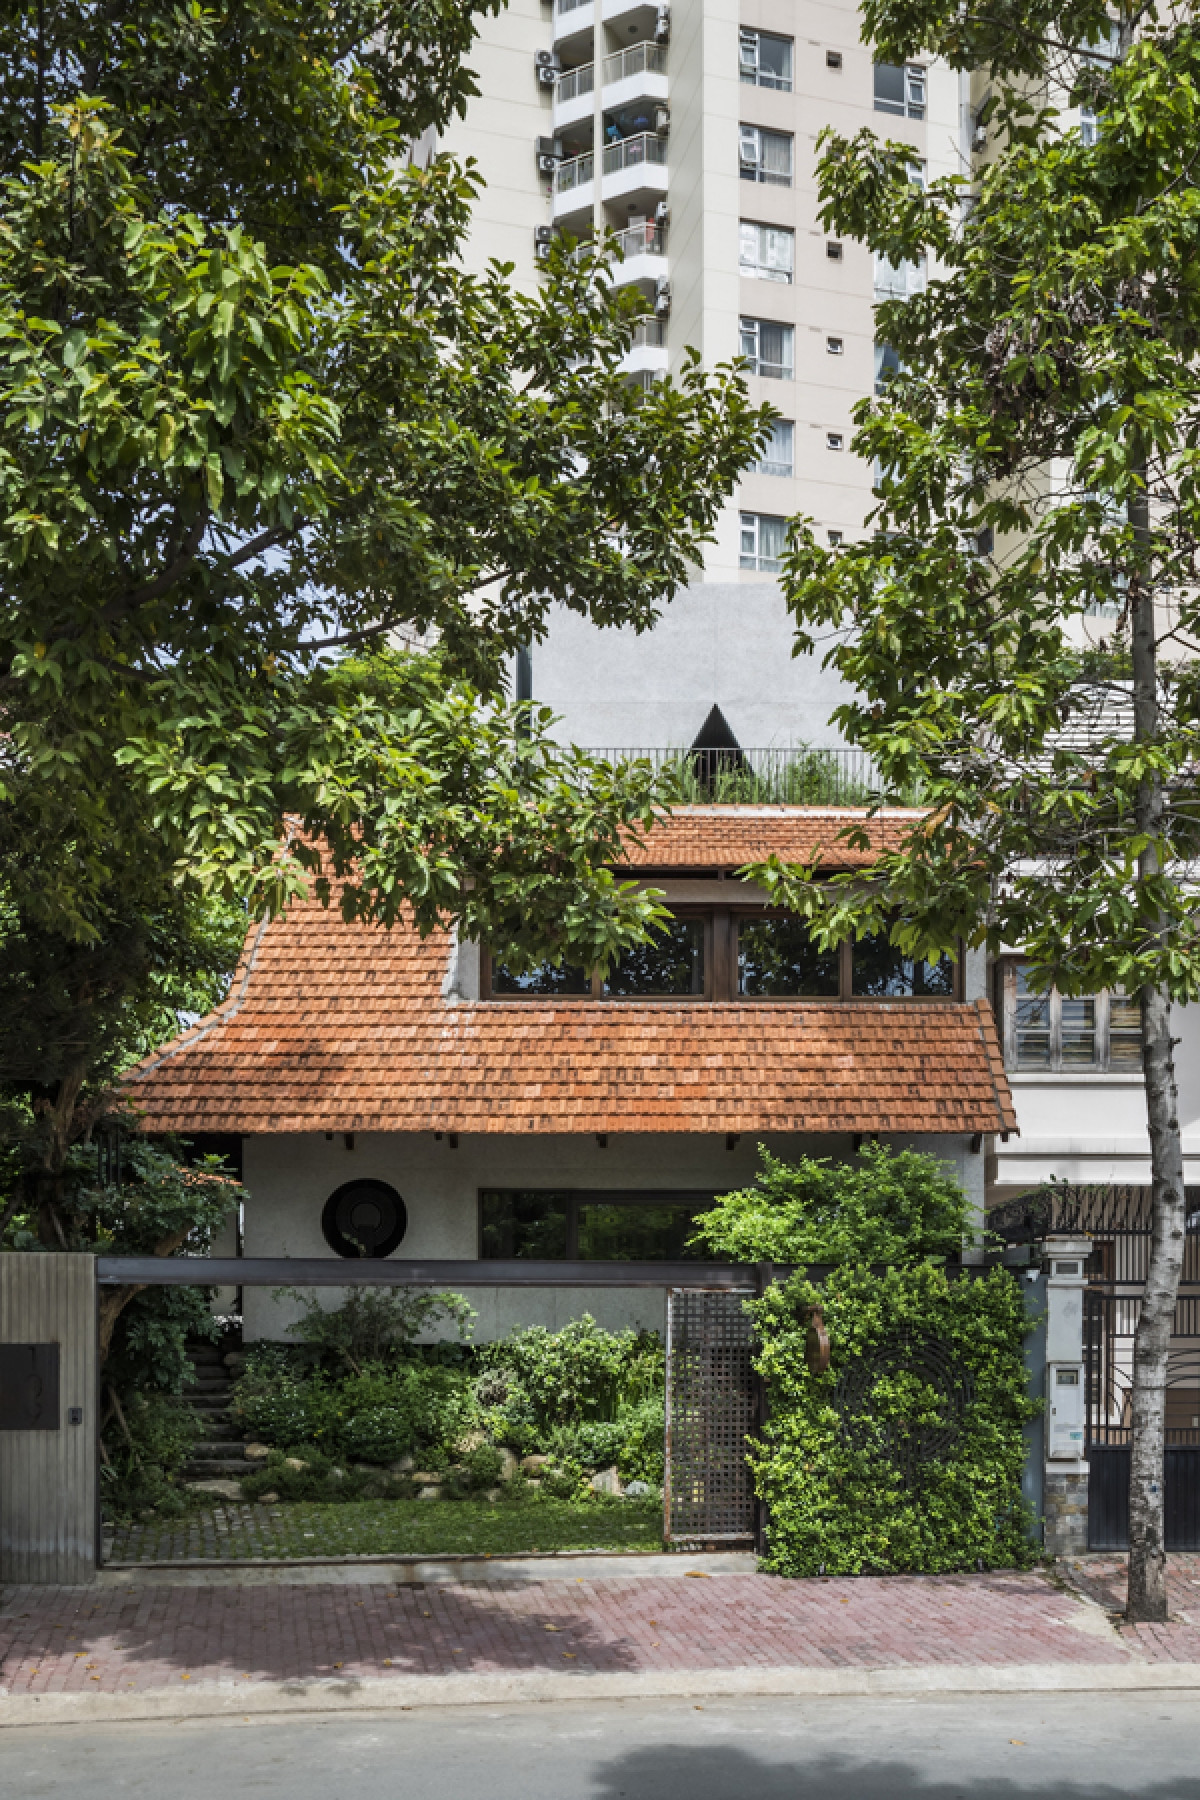 Công trình có tên là “Hiên quê”, được cải tạo từ một ngôi nhà cũ thành một không gian mới đa chức năng. Đây vừa là nhà ở gia đình, vừa là nơi sinh hoạt câu lạc bộ của những người ăn chay và thiền định. Ngôi nhà tọa lạc ở một khu đô thị mới thuộc quận 2, thành phố Hồ Chí Minh.